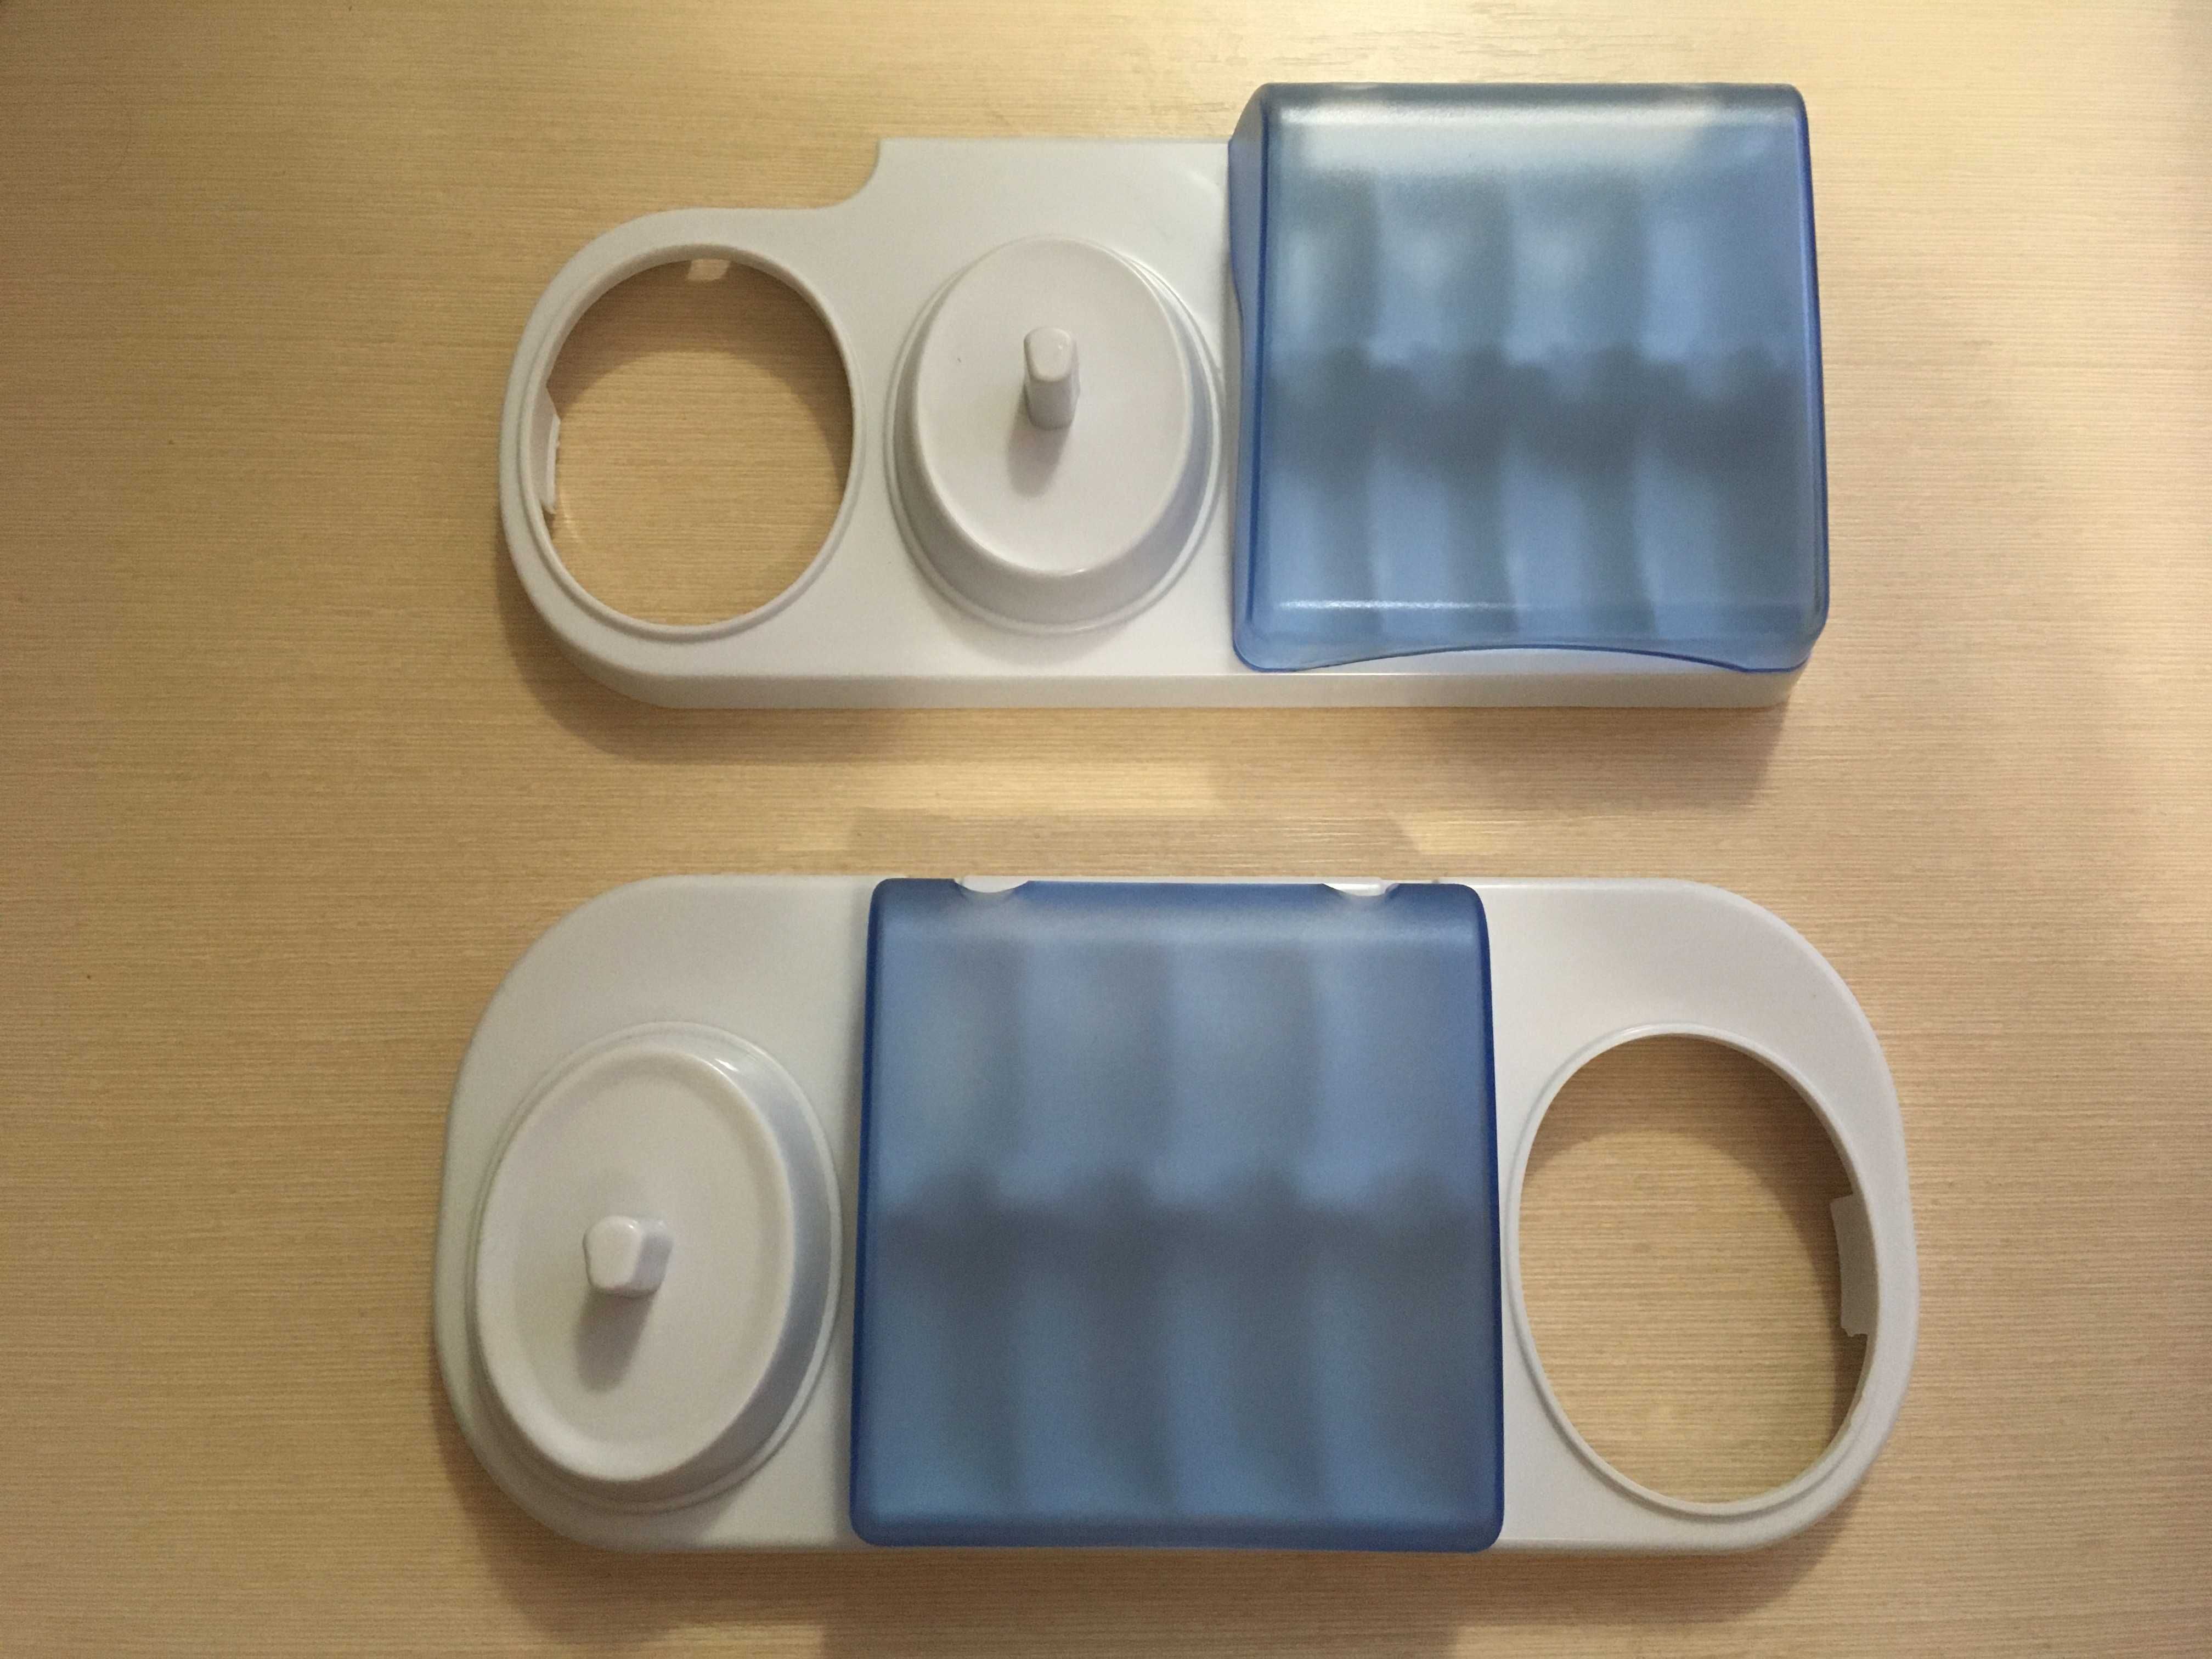 Підставка тримач для зубної щітки Oral-B та насадок для всієї сім'ї